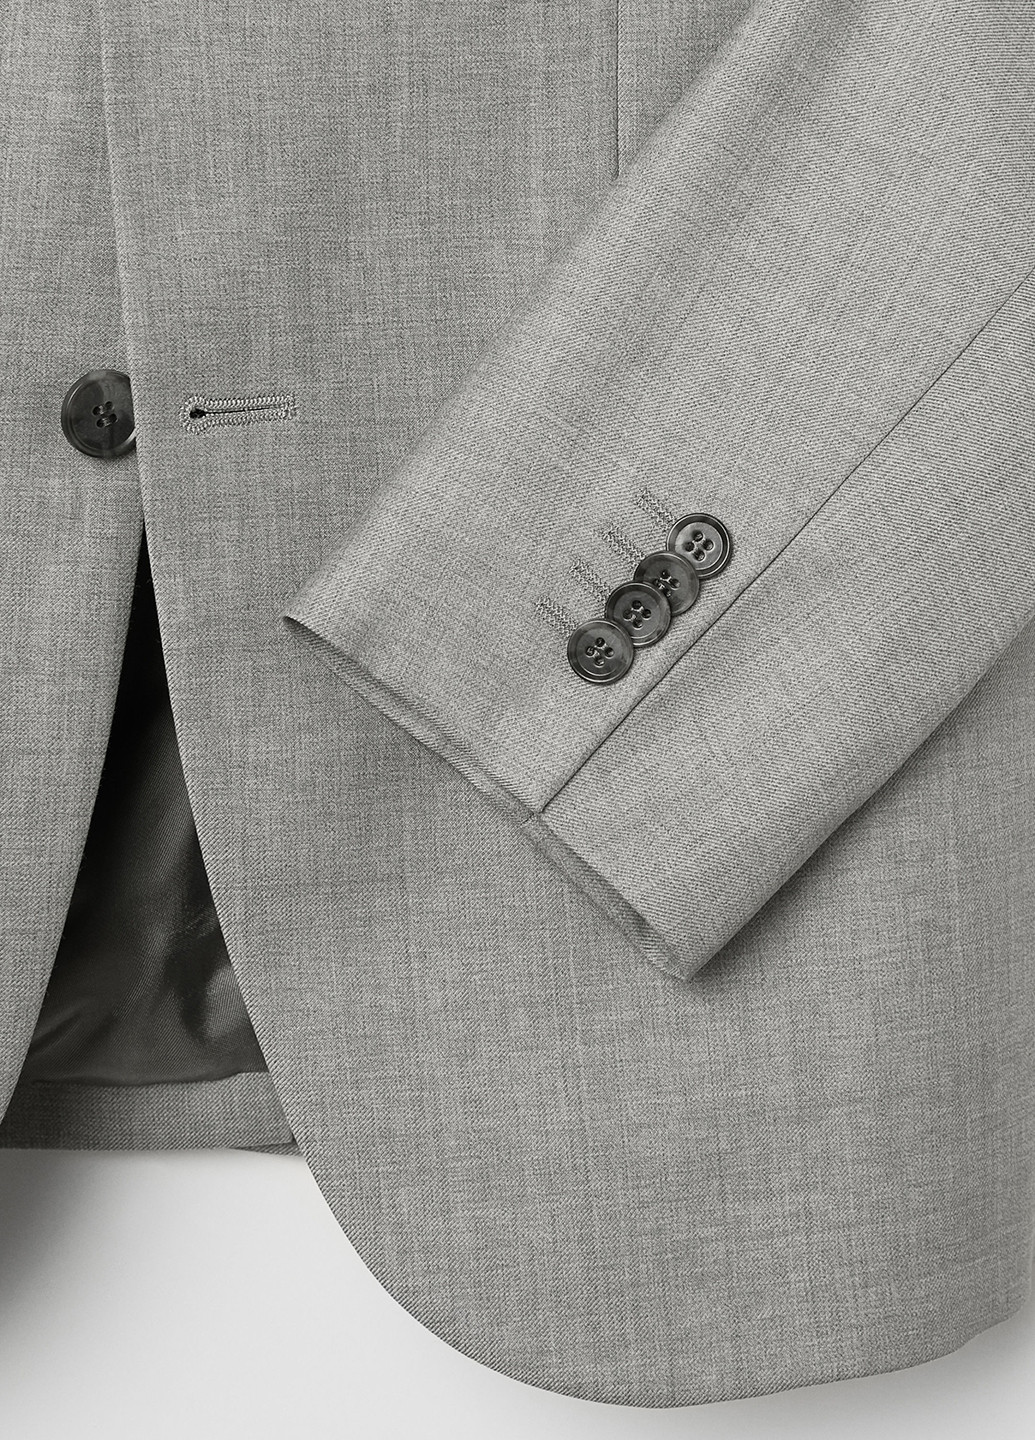 Пиджак H&M с длинным рукавом однотонный серый кэжуал